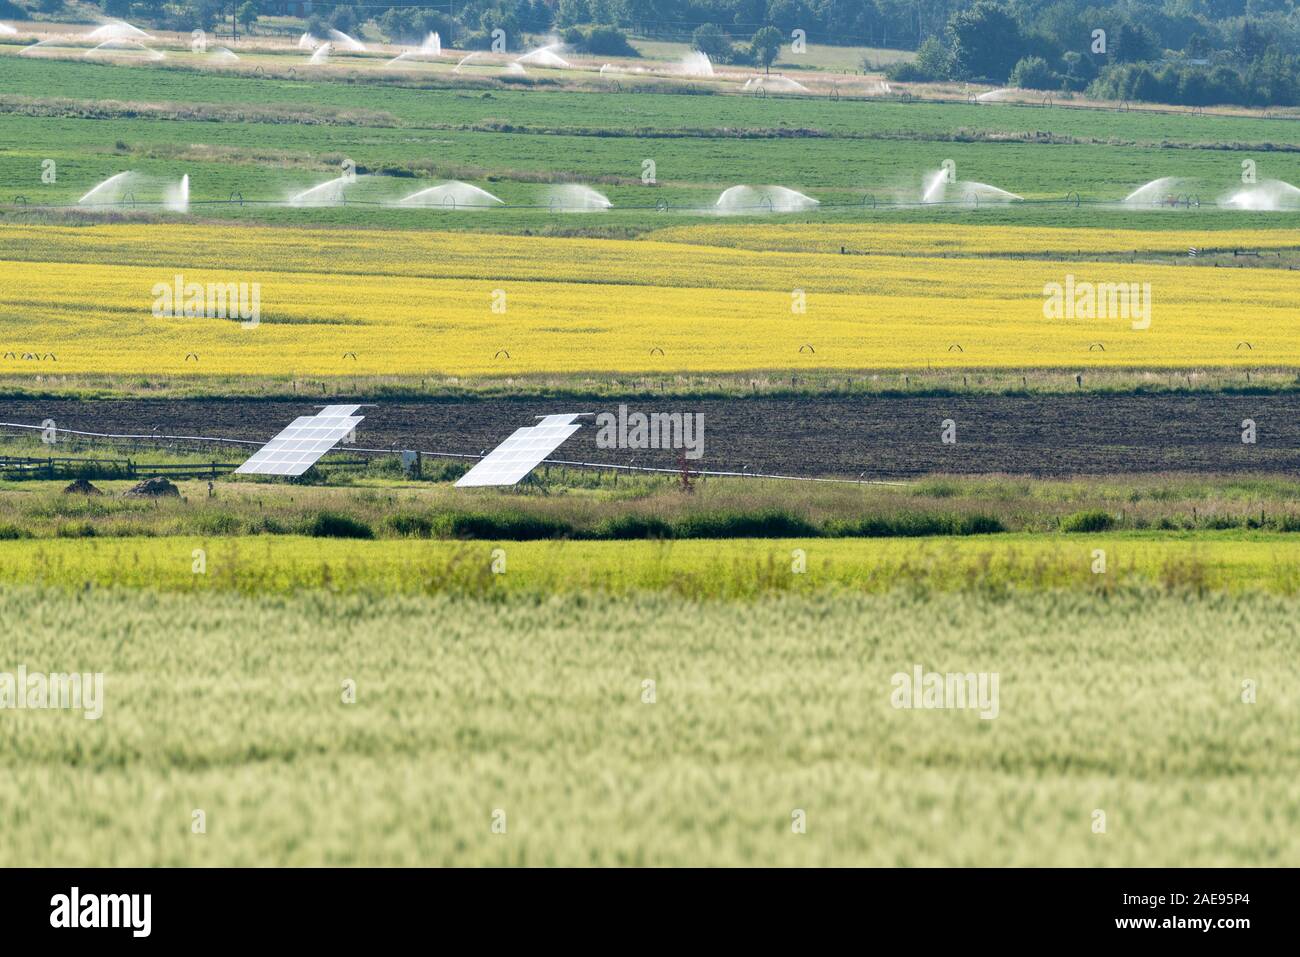 Des panneaux solaires sur une ferme dans l'Oregon est Wallowa Valley. Banque D'Images